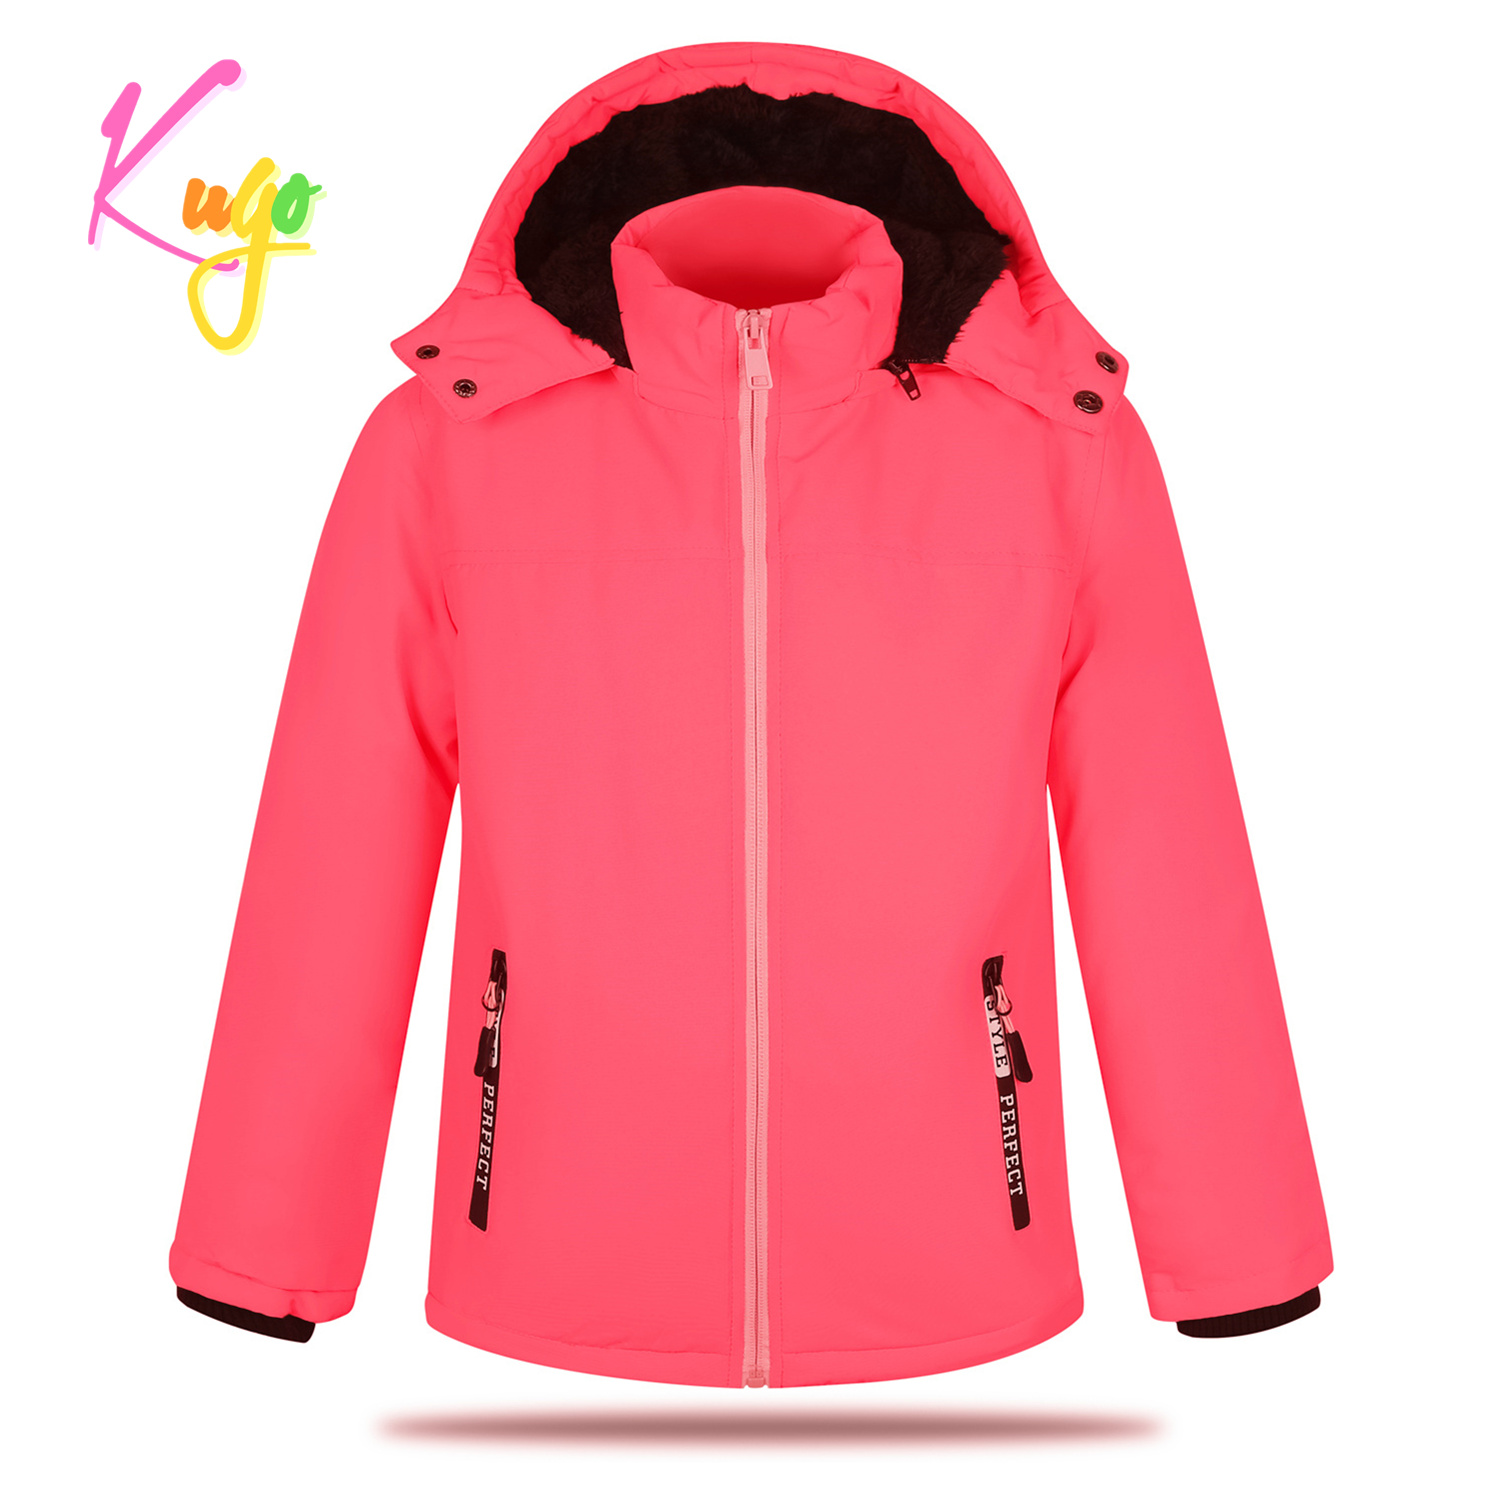 Dívčí zimní bunda - KUGO BU605, neonově lososová Barva: Lososová, Velikost: 98